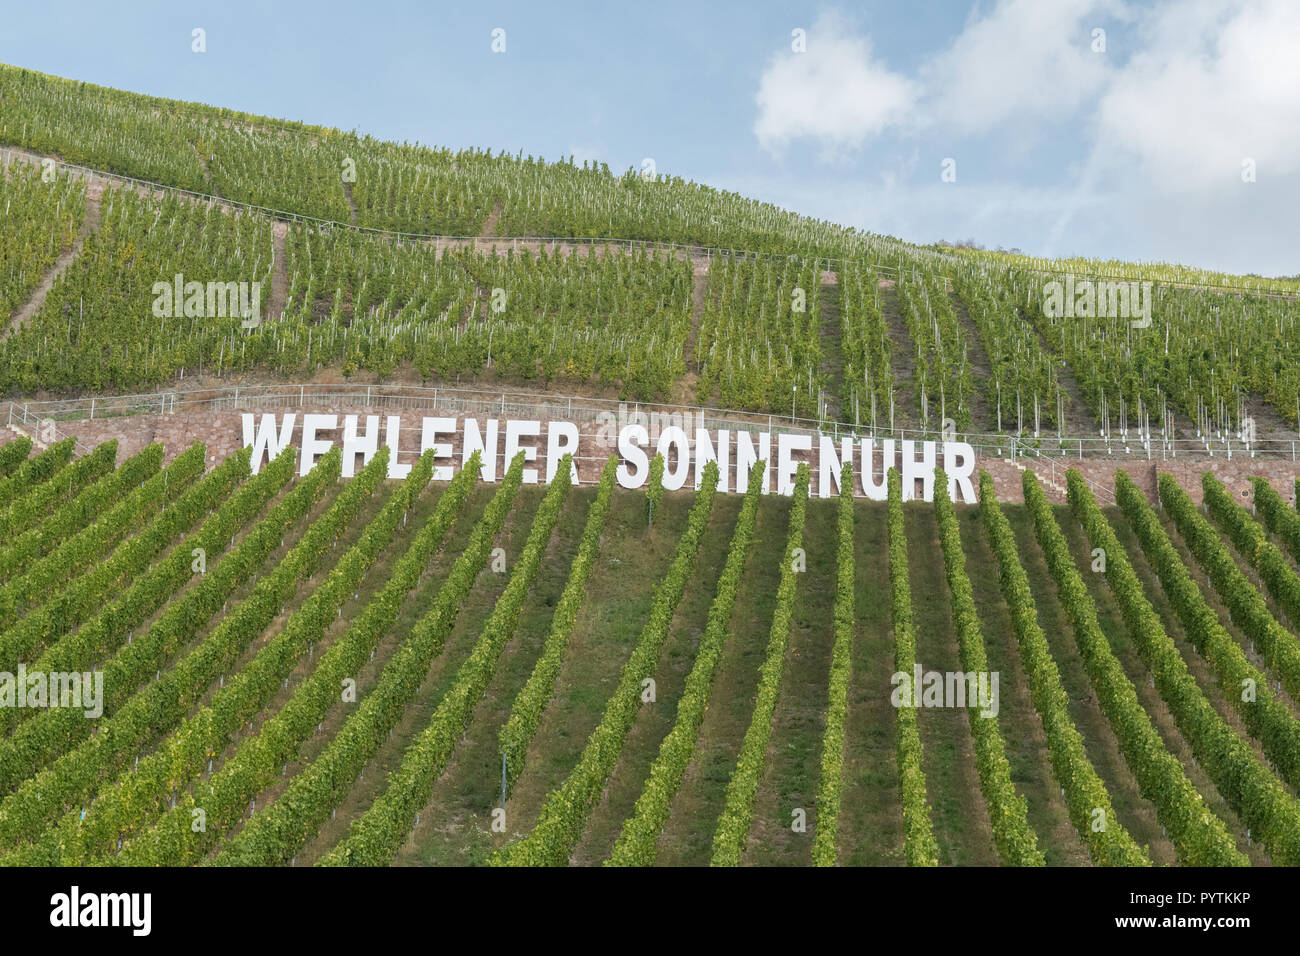 Wehlener Sonnenuhr riesling vigna nella valle della Mosella, Germania, Europa Foto Stock